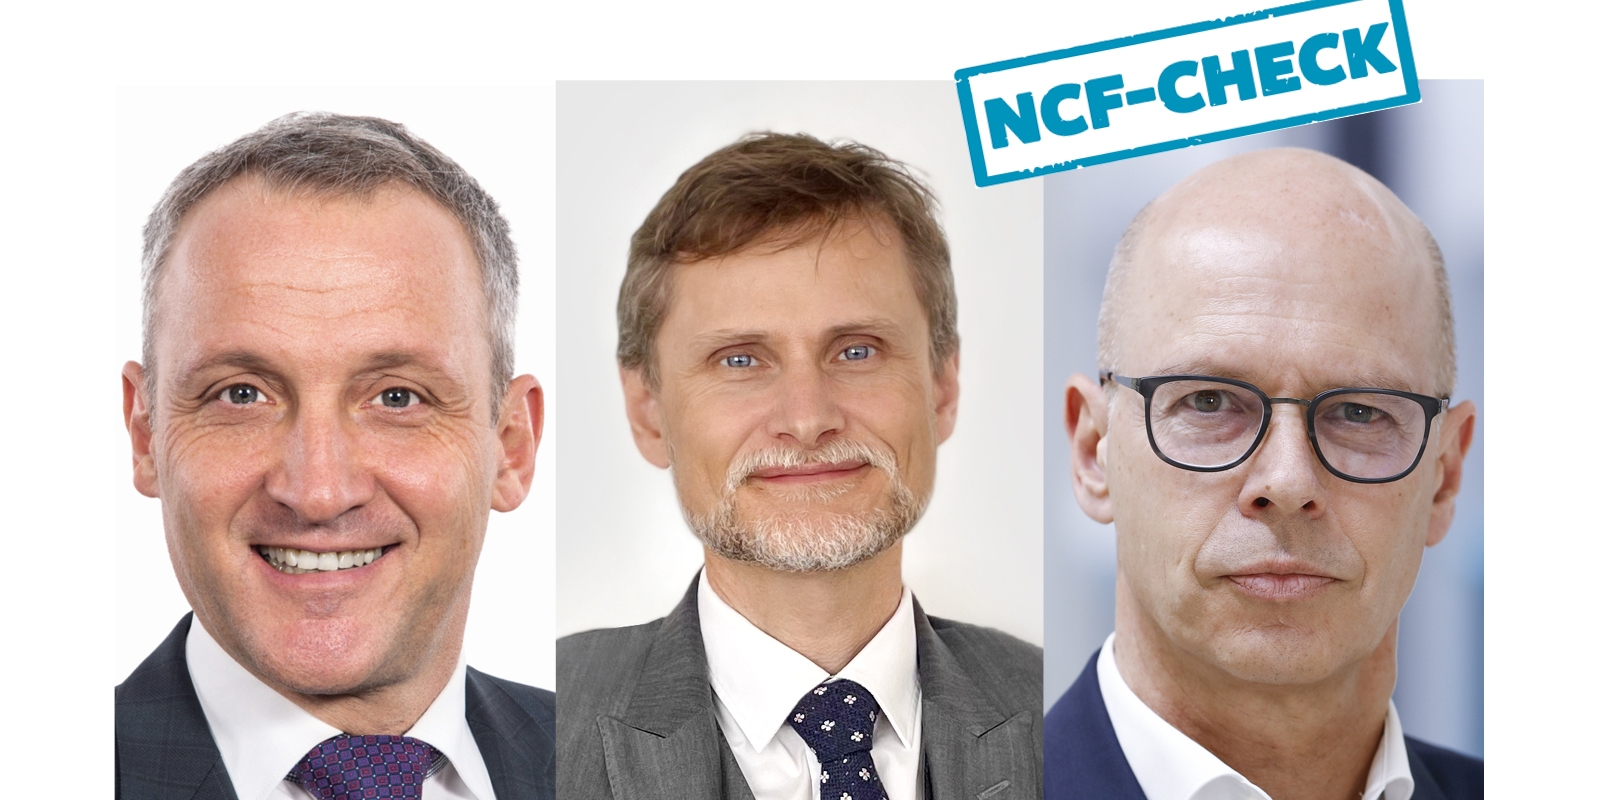 NCF-Check über Miet- und Nutzungsmodelle: Die Experten Markus Piber (DMG Mori), Reinhold Groß (Heller) und Reiner Hammerl (Index) sehen darin eine Alternative zum Maschinenkauf. 